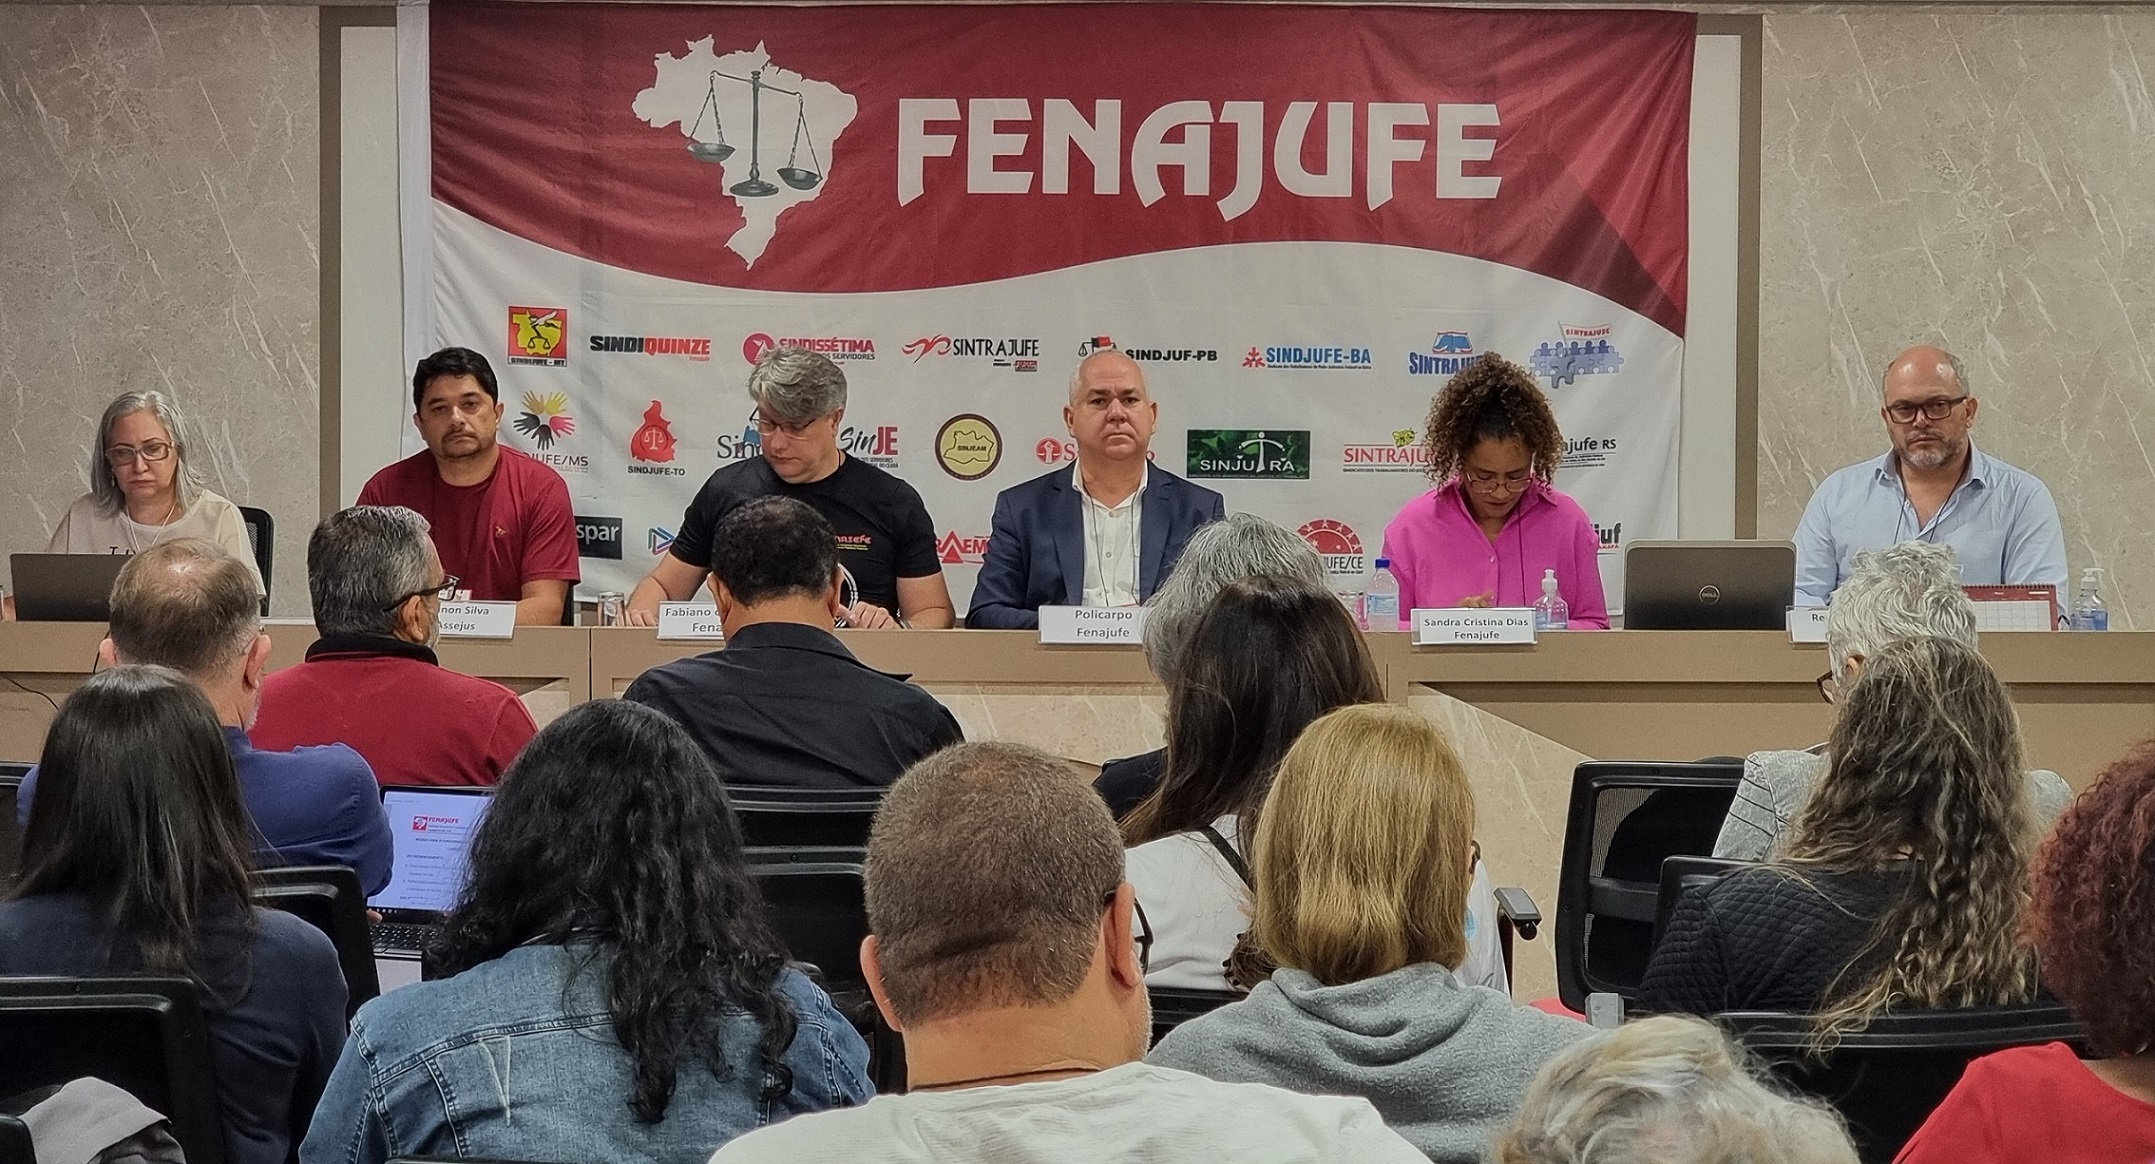 Informes da Fenajufe e Sindicatos abrem o Encontro Nacional de Carreira da Federação